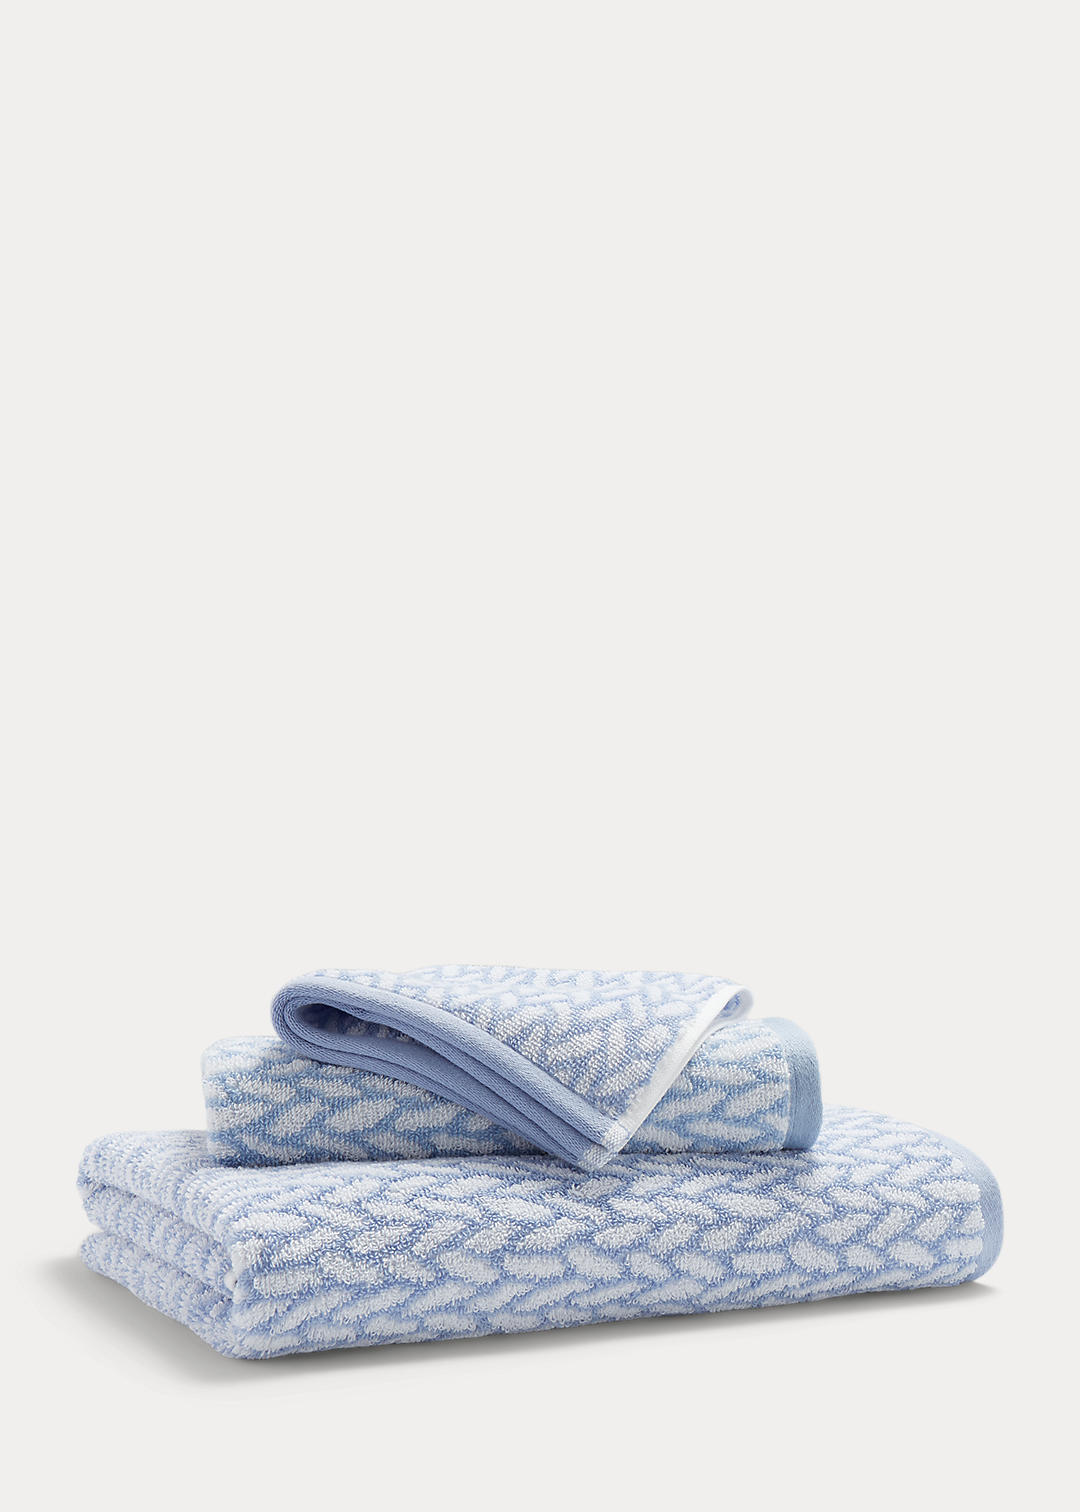 Lauren Home Sanders Basketweave Bath Towels